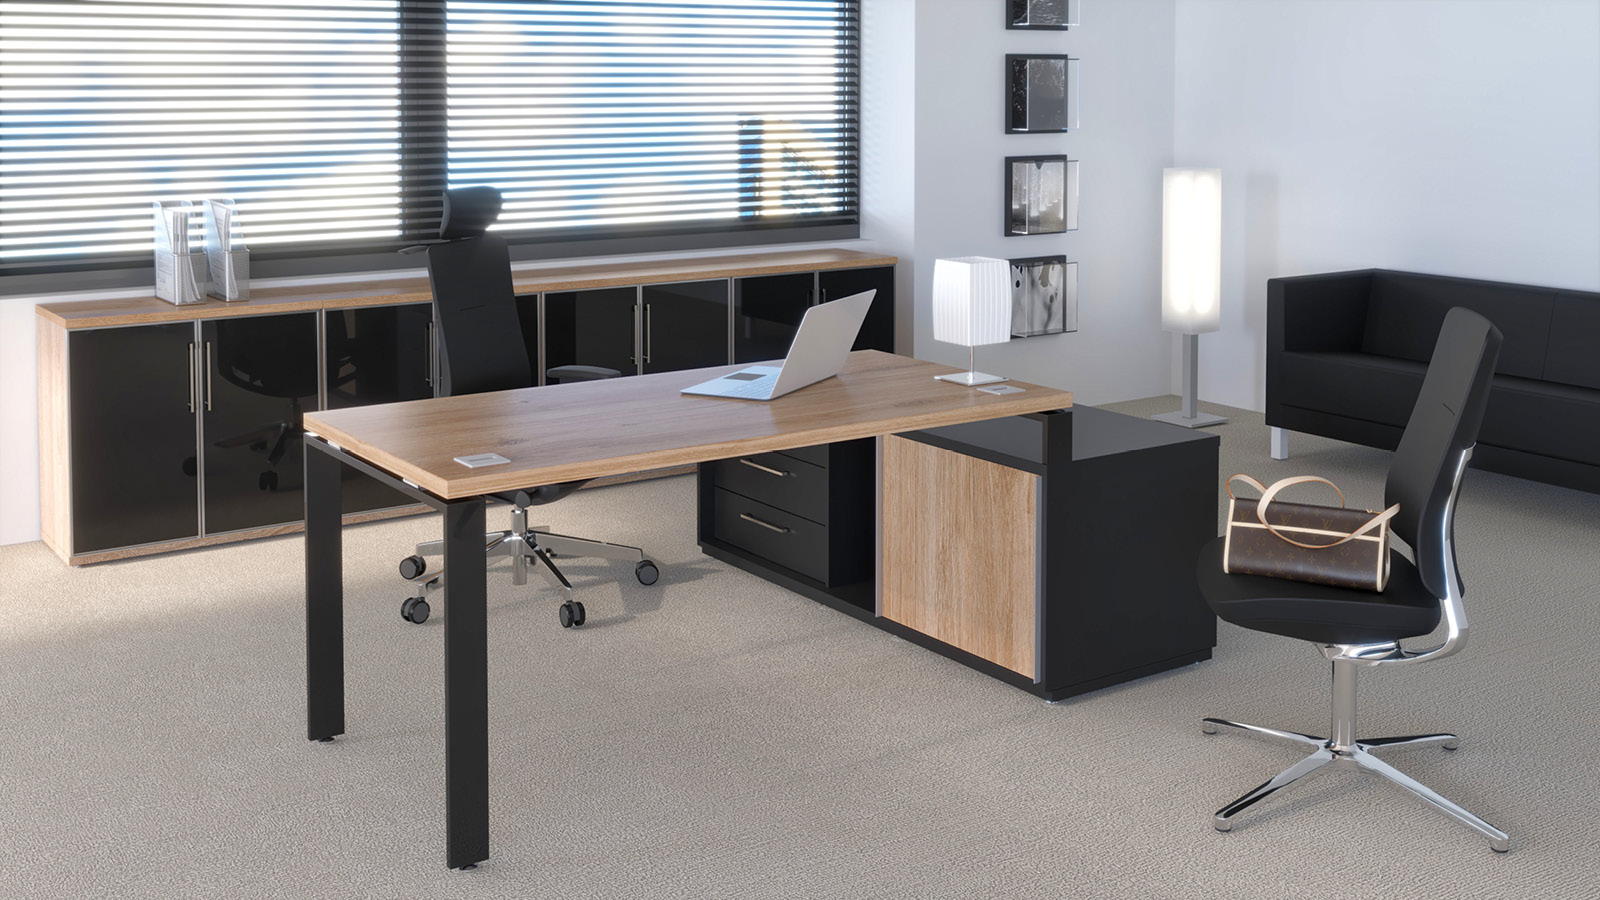 Aranżacja home office - biurko zostało ustawione na komodzie, uzupełnione o krzesło obrotowe oraz niską szafę na dokumenty.